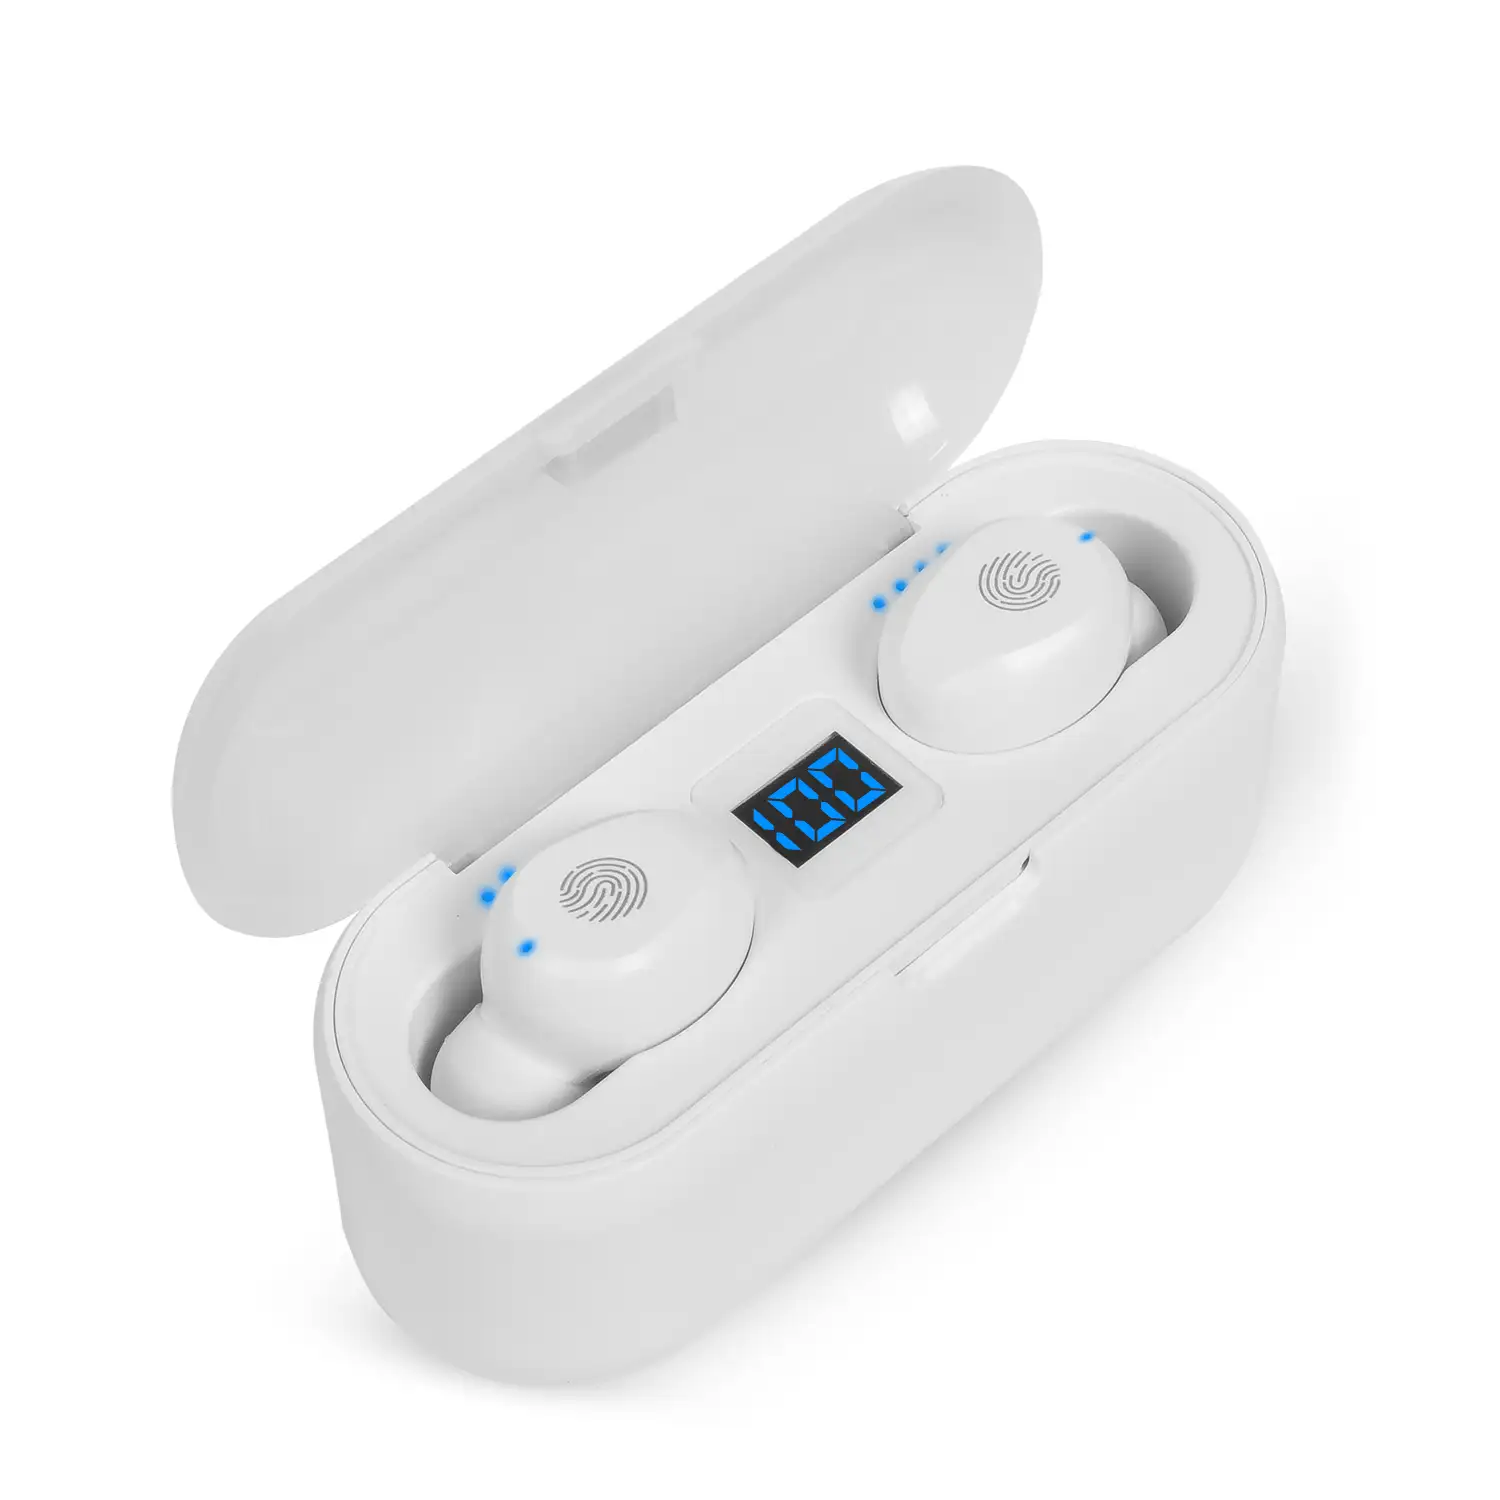 Auriculares TWS F9 Bluetooth 5.0 táctil con base de carga powerbank con indicador de carga interna y de auriculares.